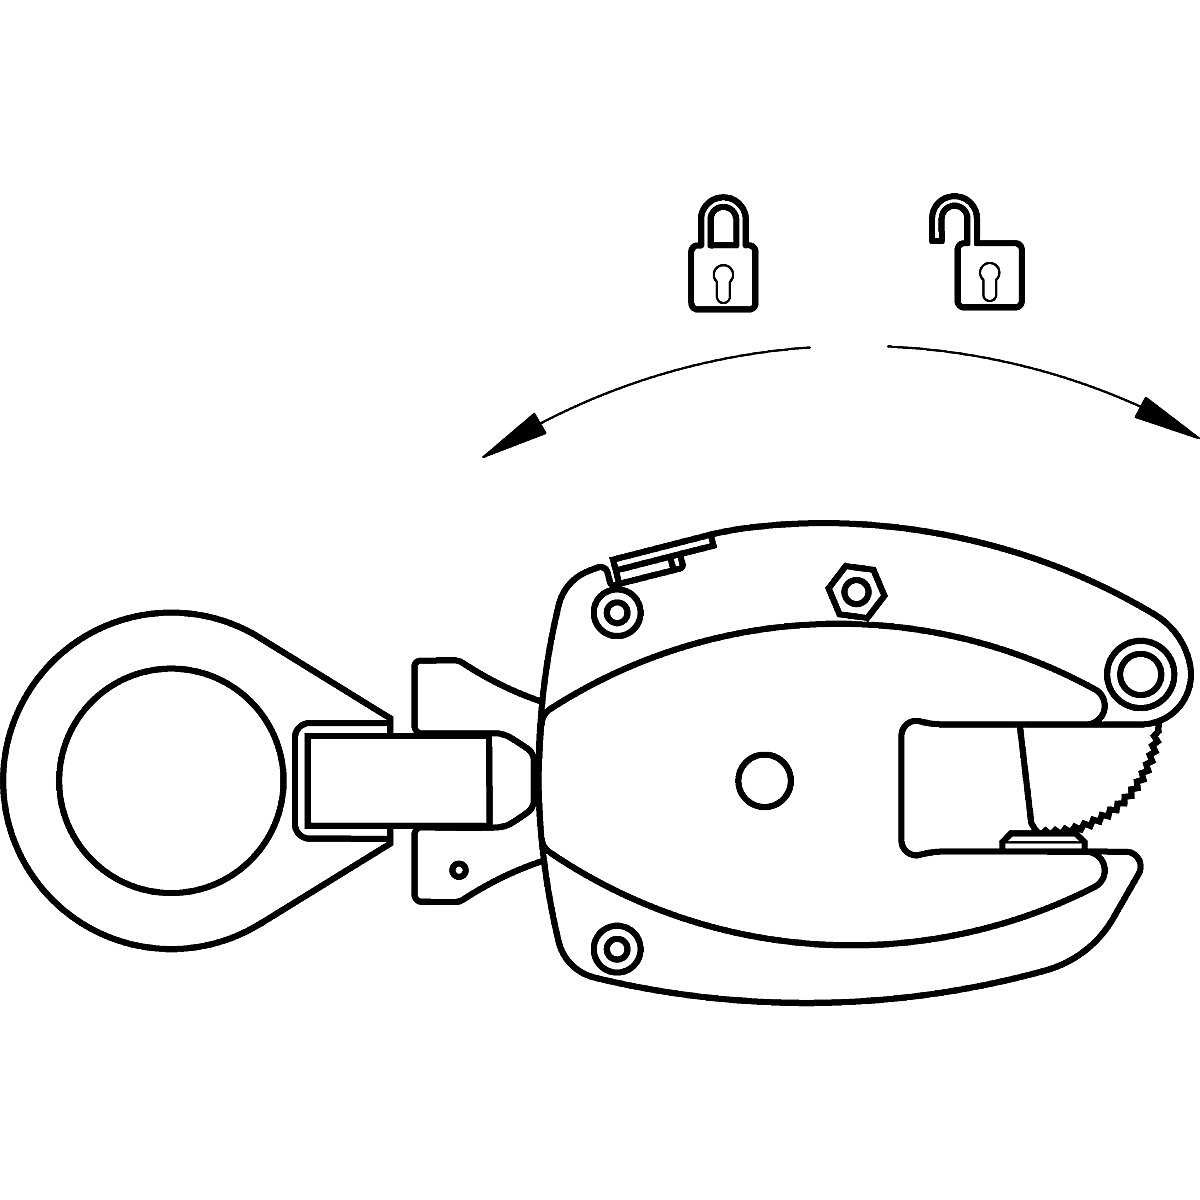 Clemă de suspensie model KL, utilizare pe verticală – Pfeifer (Imagine produs 6)-5